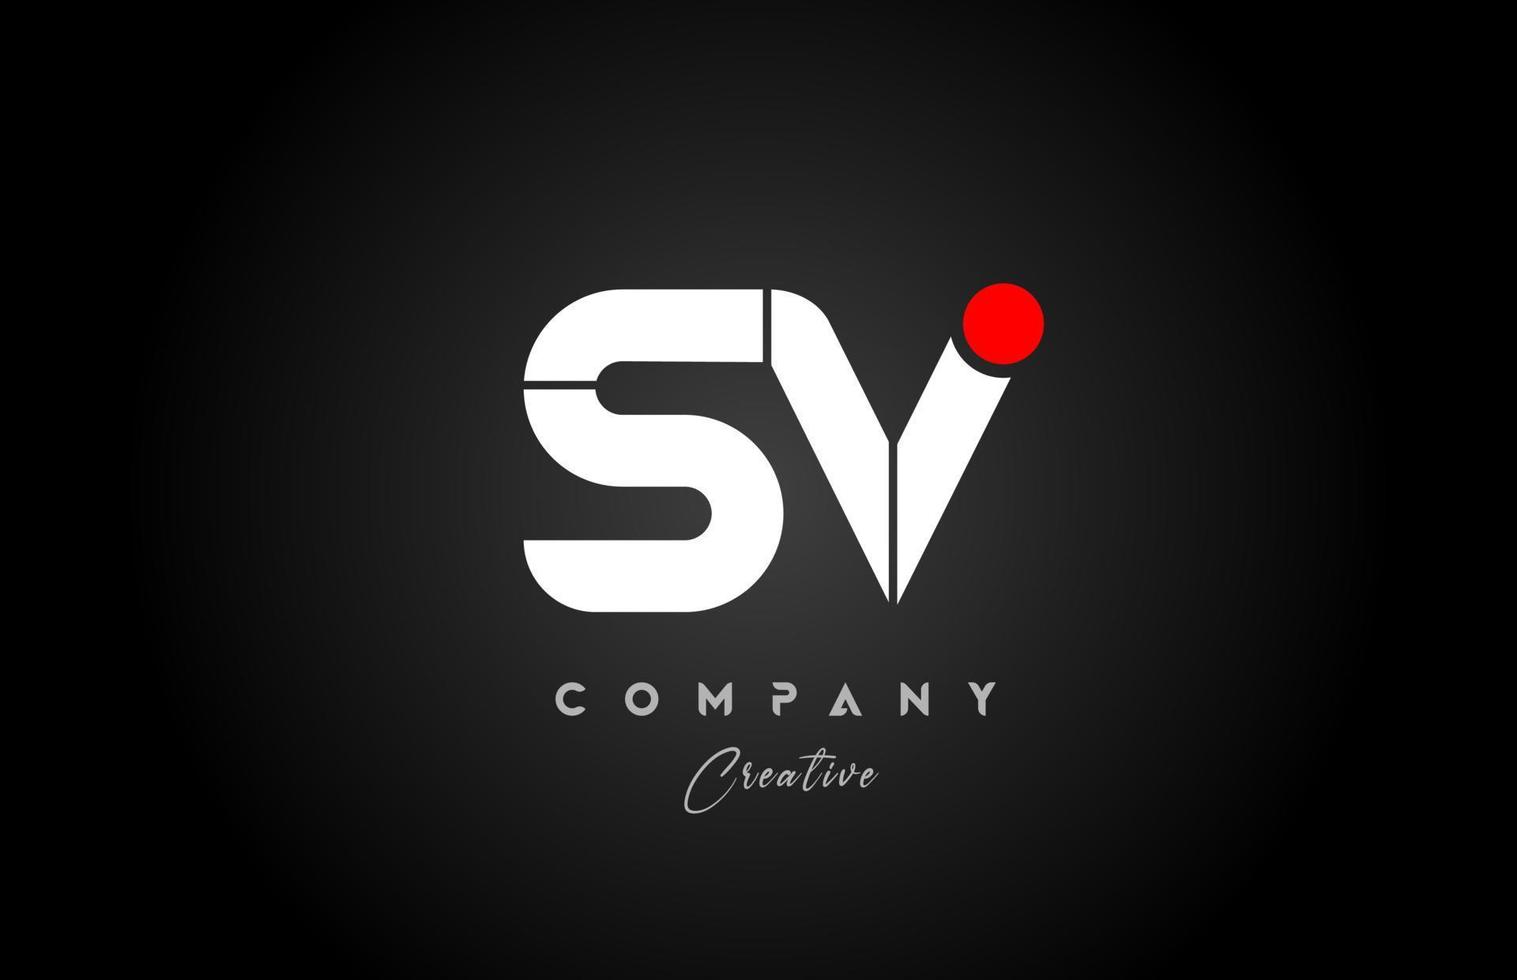 rot Weiß Alphabet Brief sv s v Kombination zum Unternehmen Logo. geeignet wie Logo vektor